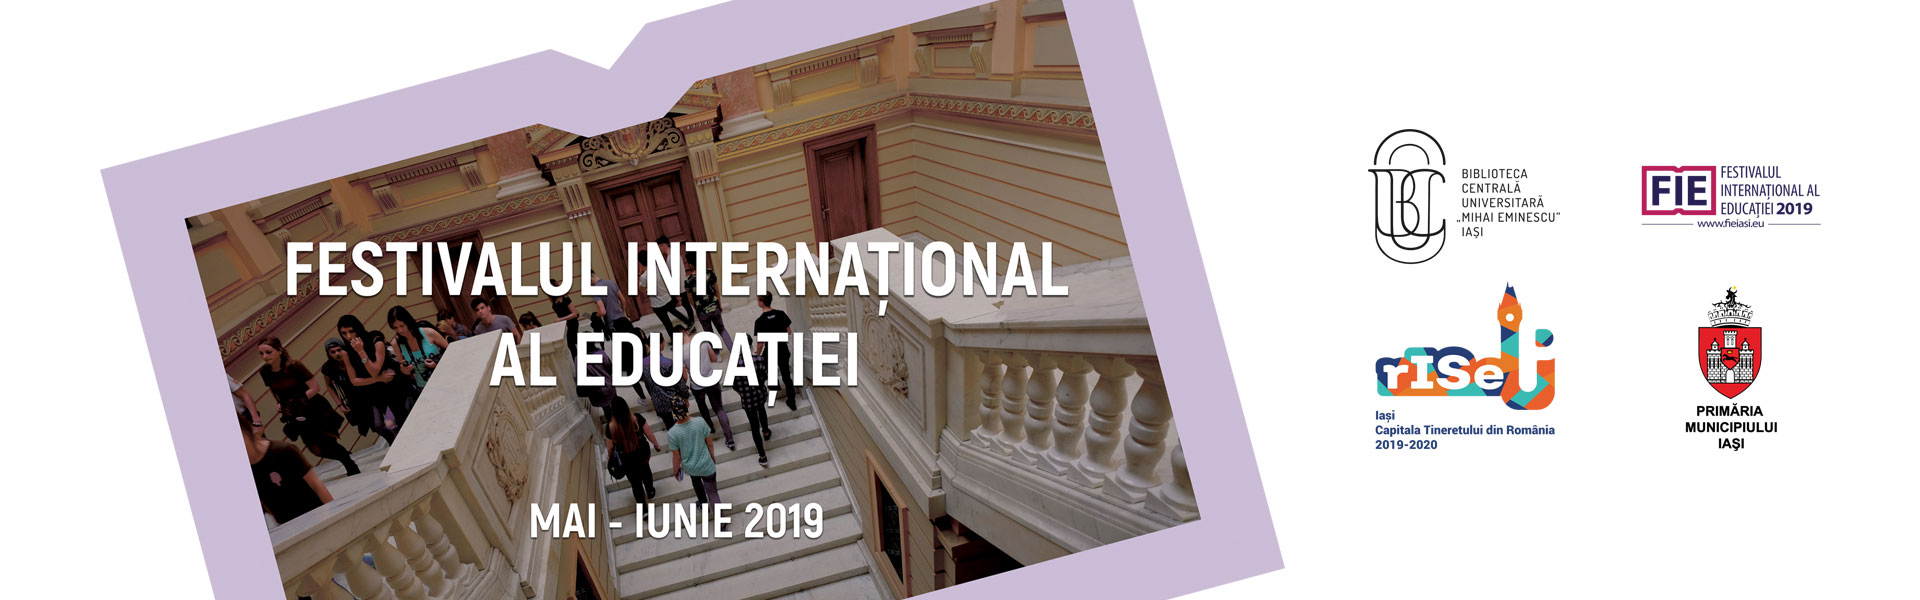 Festivalul Internaţional al Educaţiei Iaşi 2019